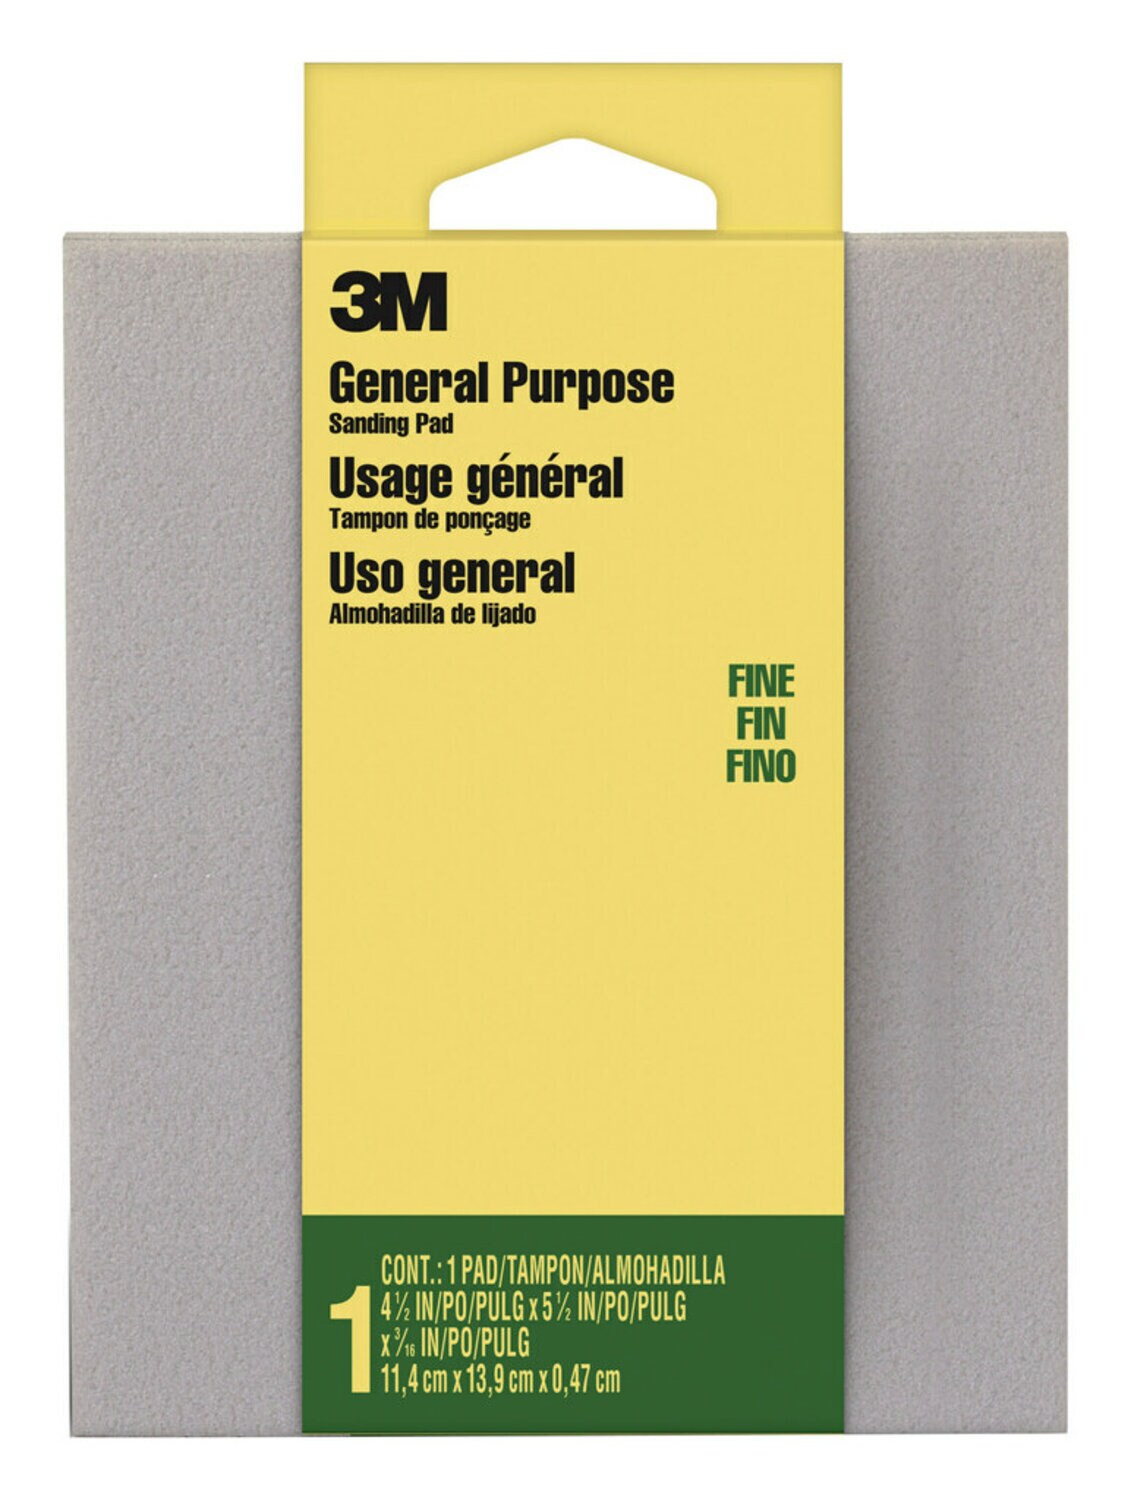 7000051975 - 3M General Purpose Sanding Pad 917DC-NA, 4 1/2 in x 5 1/2 in x 3/16 in, Fine, 1/pk 24 pks/cs